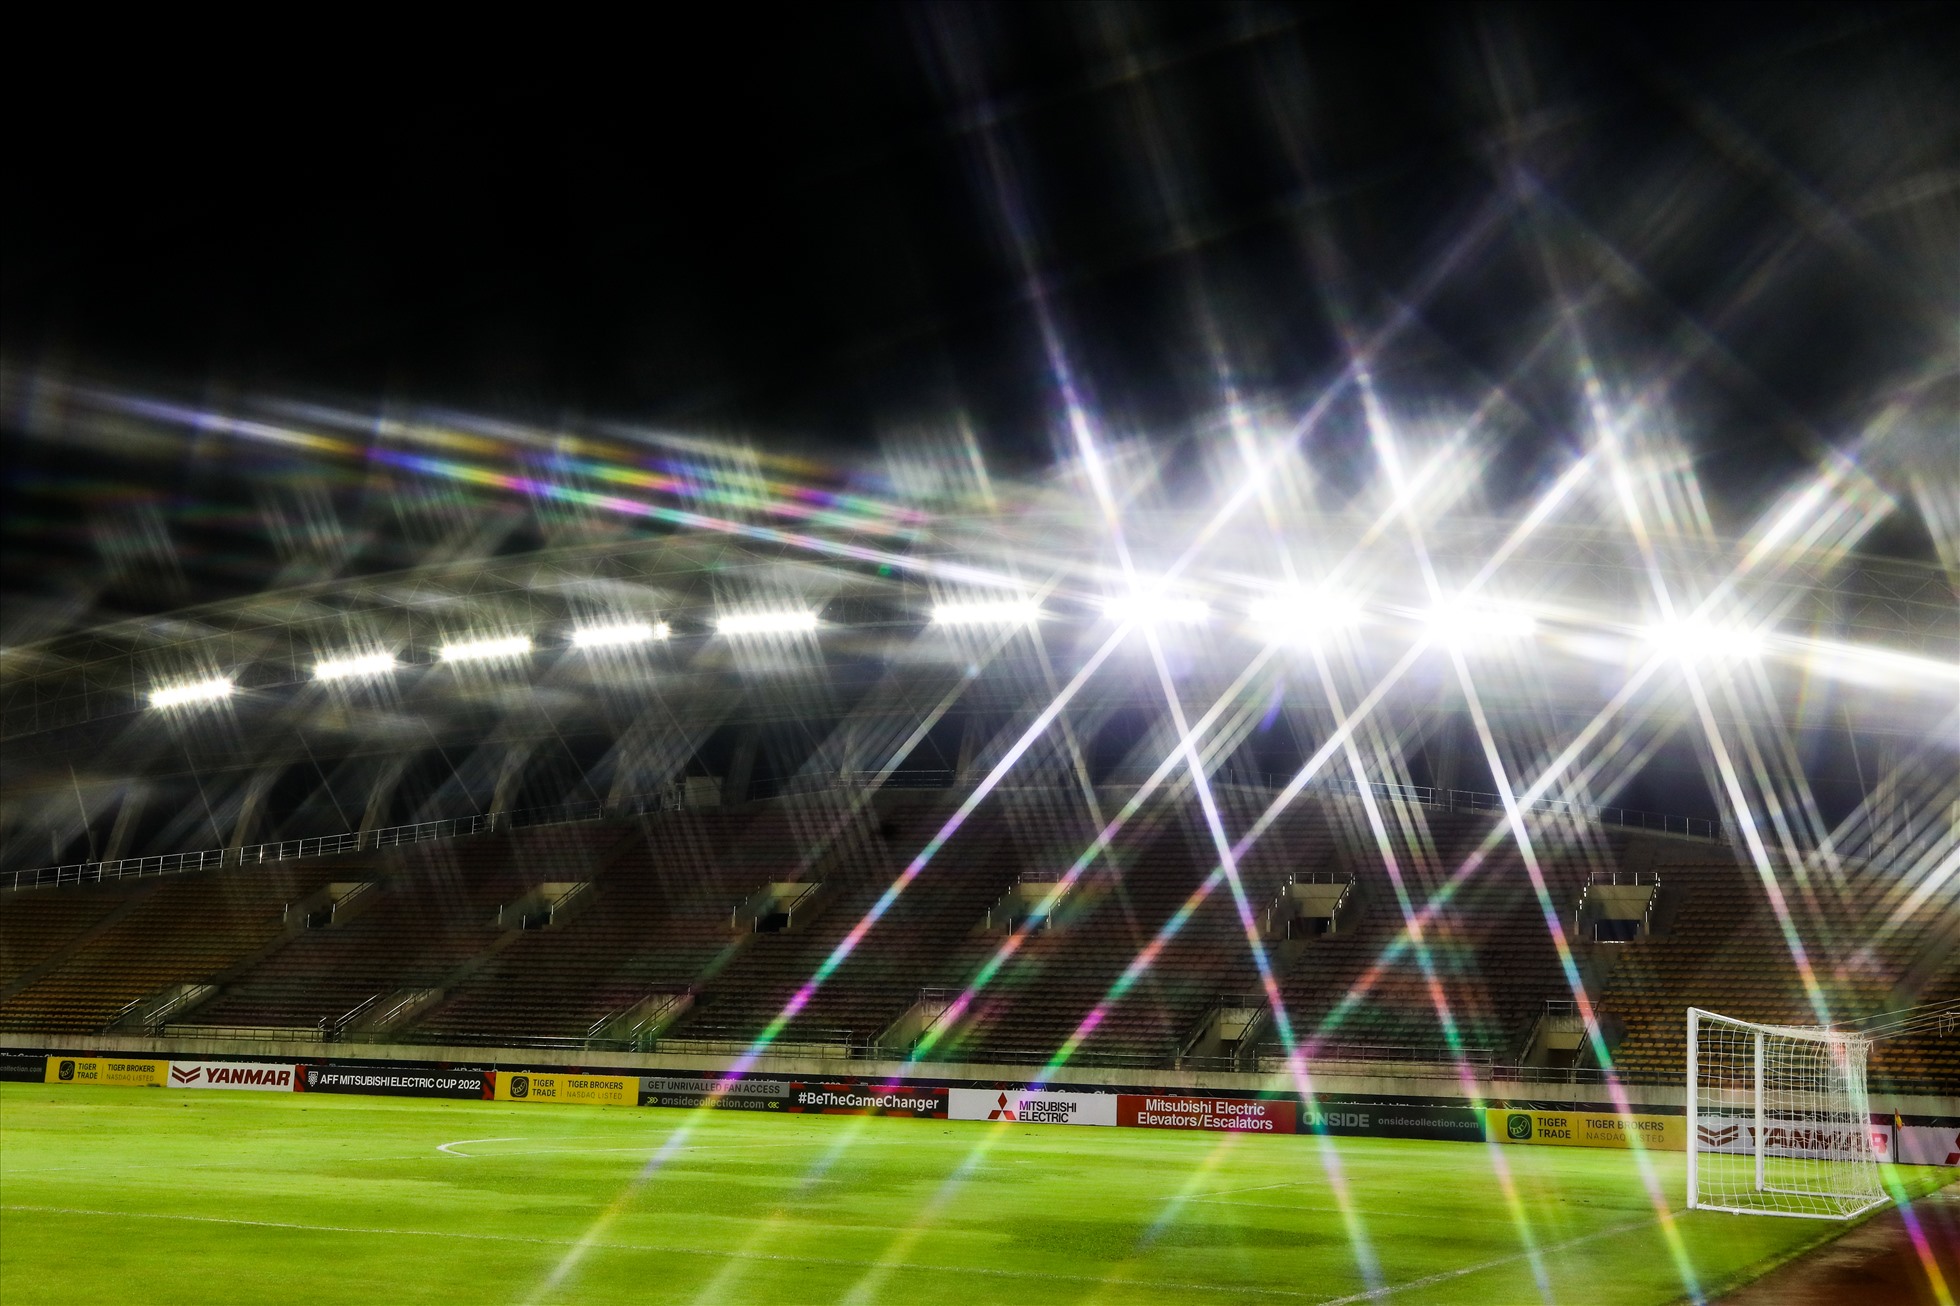 Sân sử dụng hệ thống đèn chiếu sáng công suất lớn ở 4 góc và 2 bên khán đài A, B nhằm đảm bảo chất lượng ánh sáng đồng đều giúp các cầu thủ thi đấu trong điều kiện ánh sáng tốt nhất.